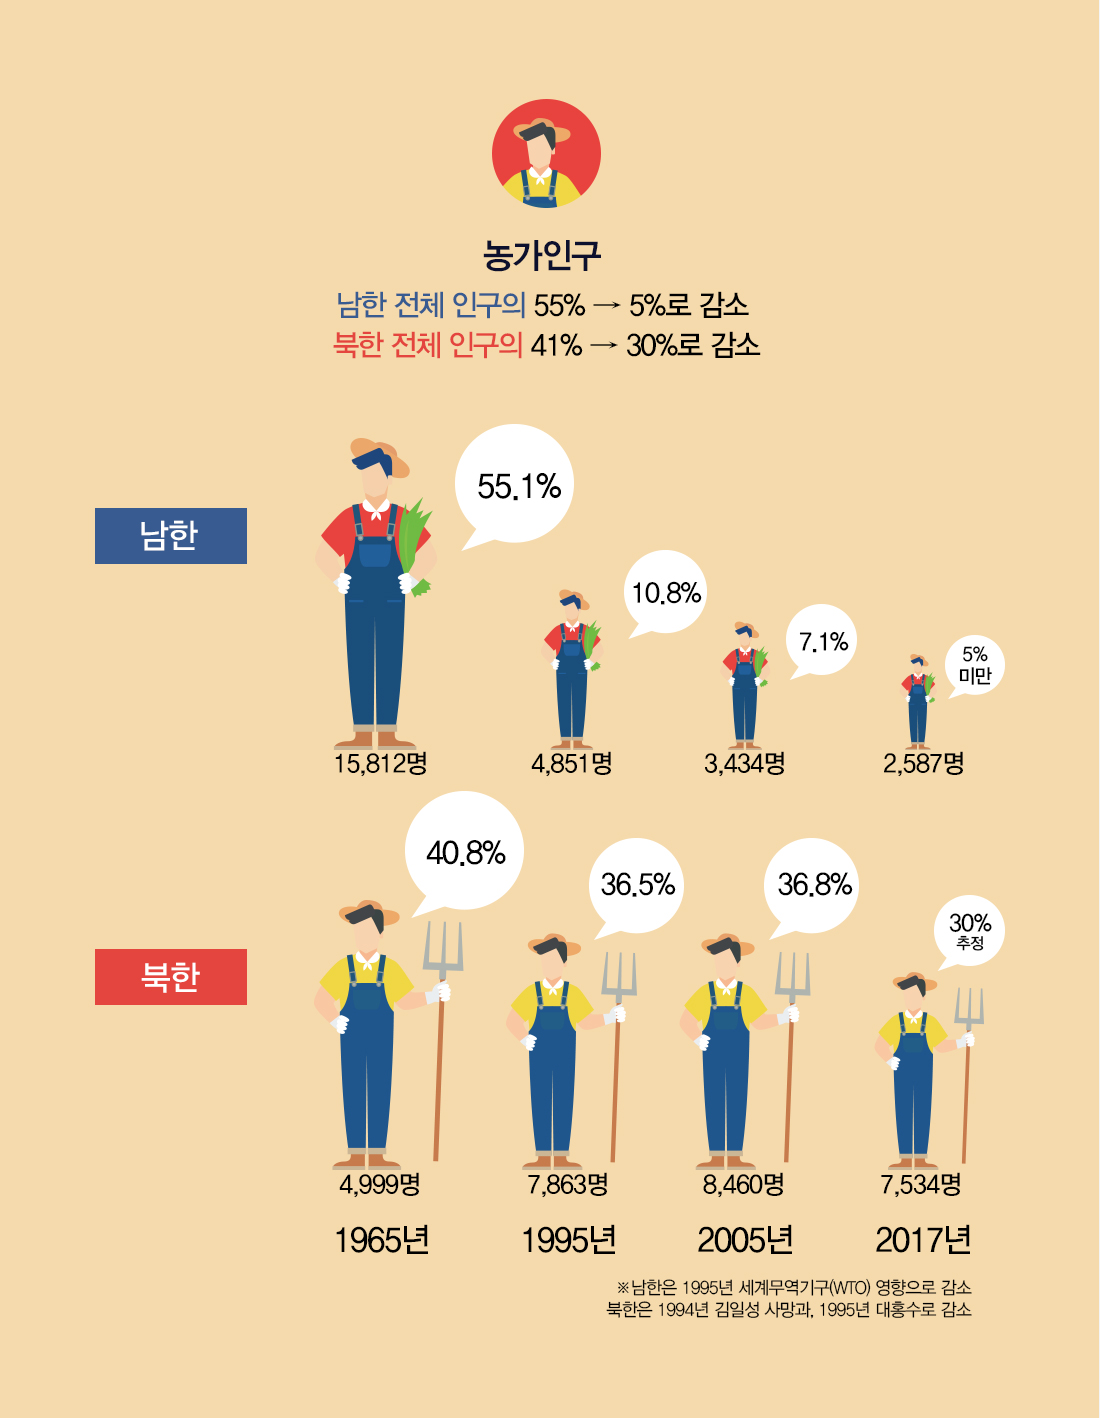 남북 농가수 변화 남한은 세계무역기구(WTO) 영향으로 55%였던 농가수가 11%로 감소하고 현재는 5% 미만 북한은 1994년 김일성 사망과 1995년 대홍수로 41%였던 농가수가 37%로 감소하고 현재는 30%대 유지 추정